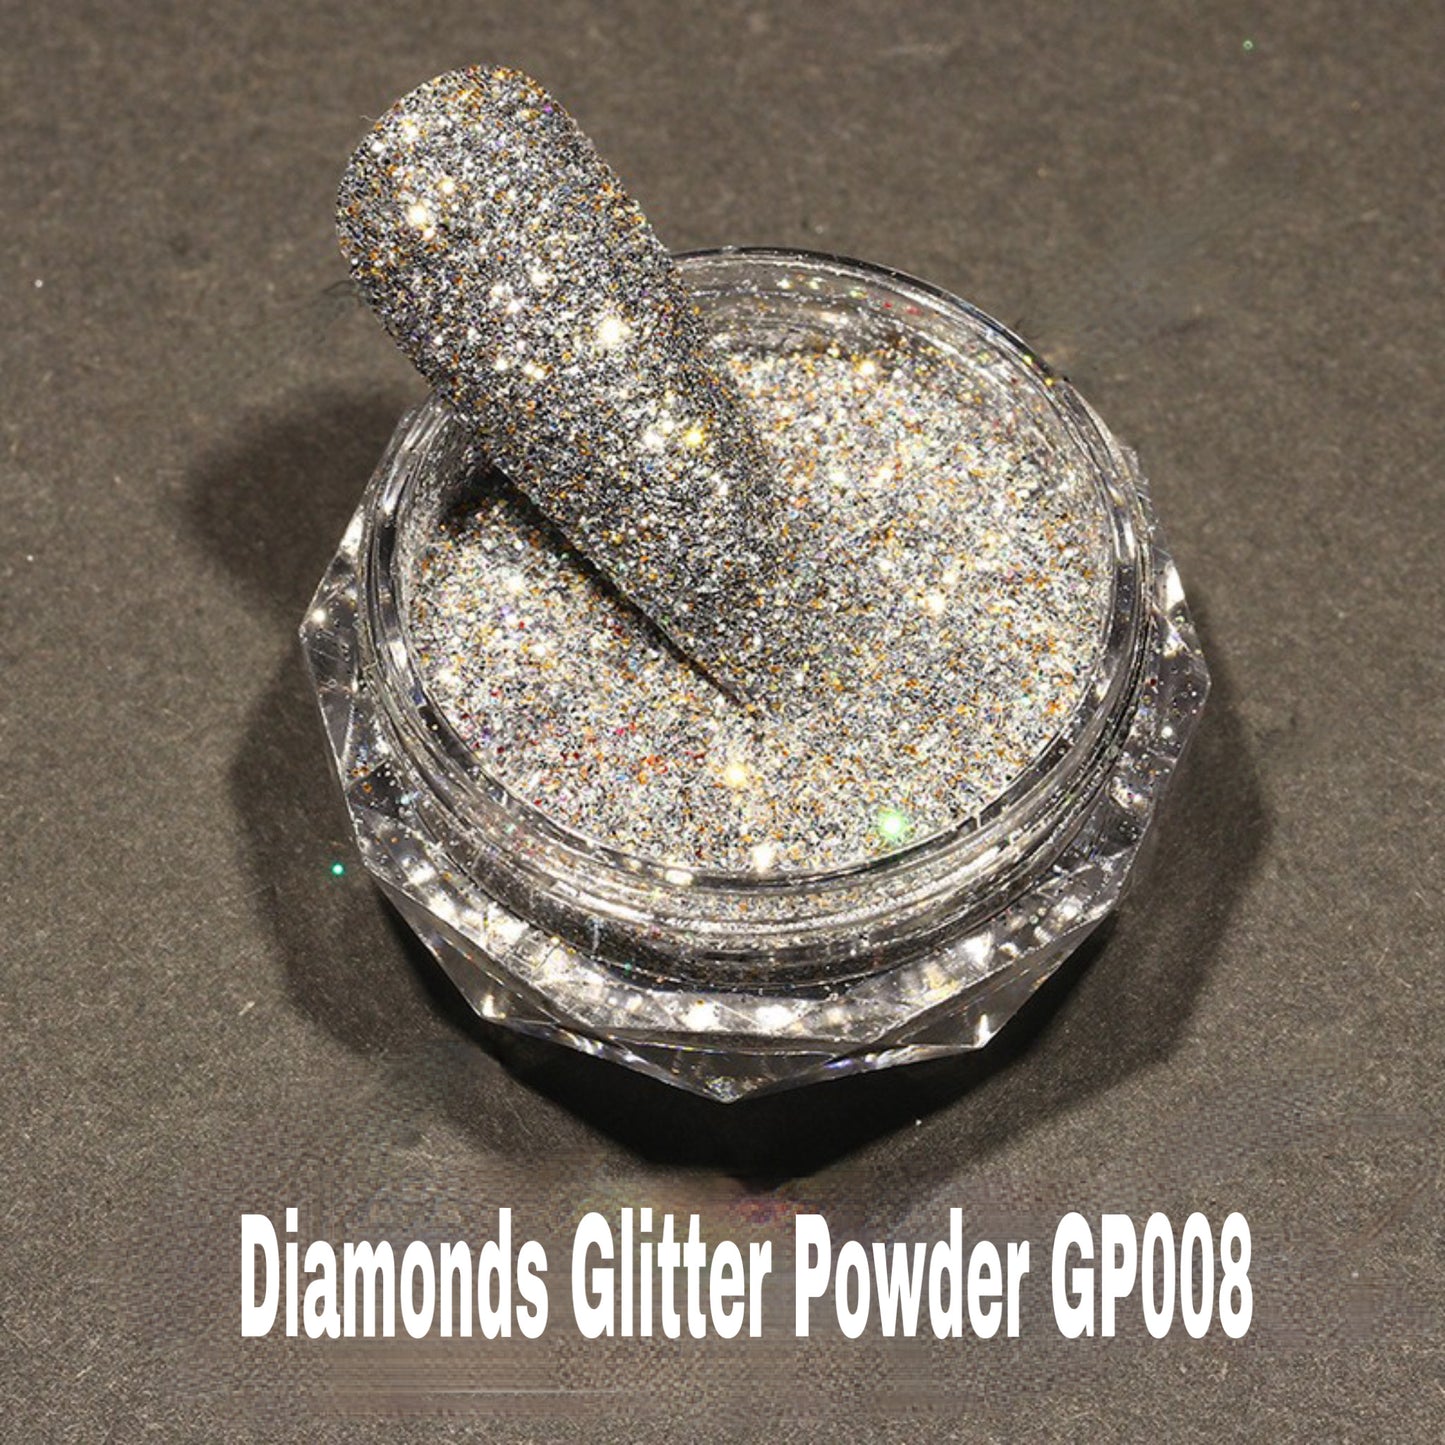 DIAMONDS GLITTER POWDER GP008 - Premier Nail Supply 